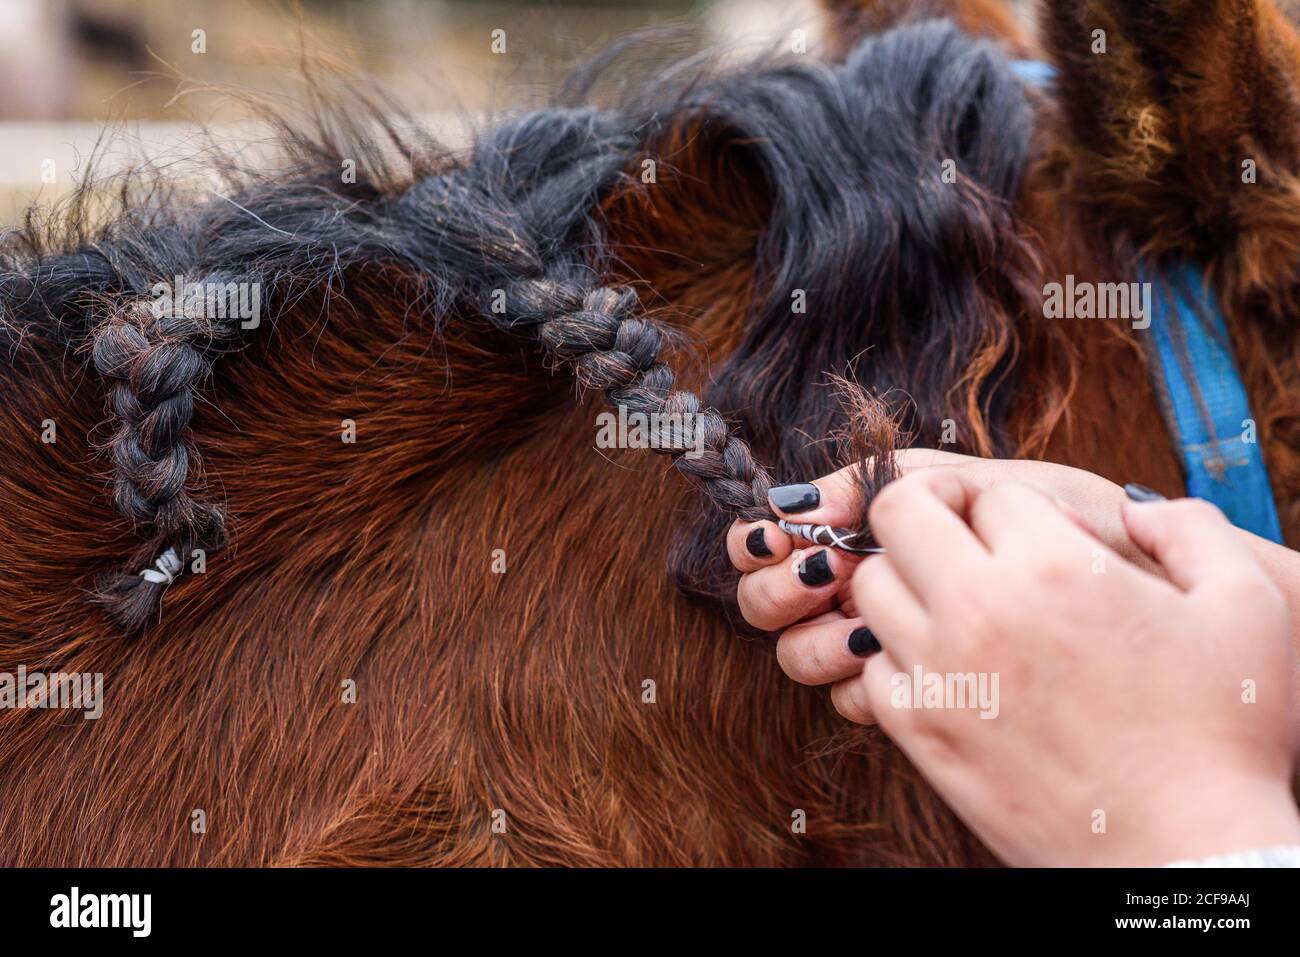 Donna irriconoscibile tagliata con mani curate intrecciando la criniera nera del cavallo della baia mentre spende il tempo sul ranch Foto Stock